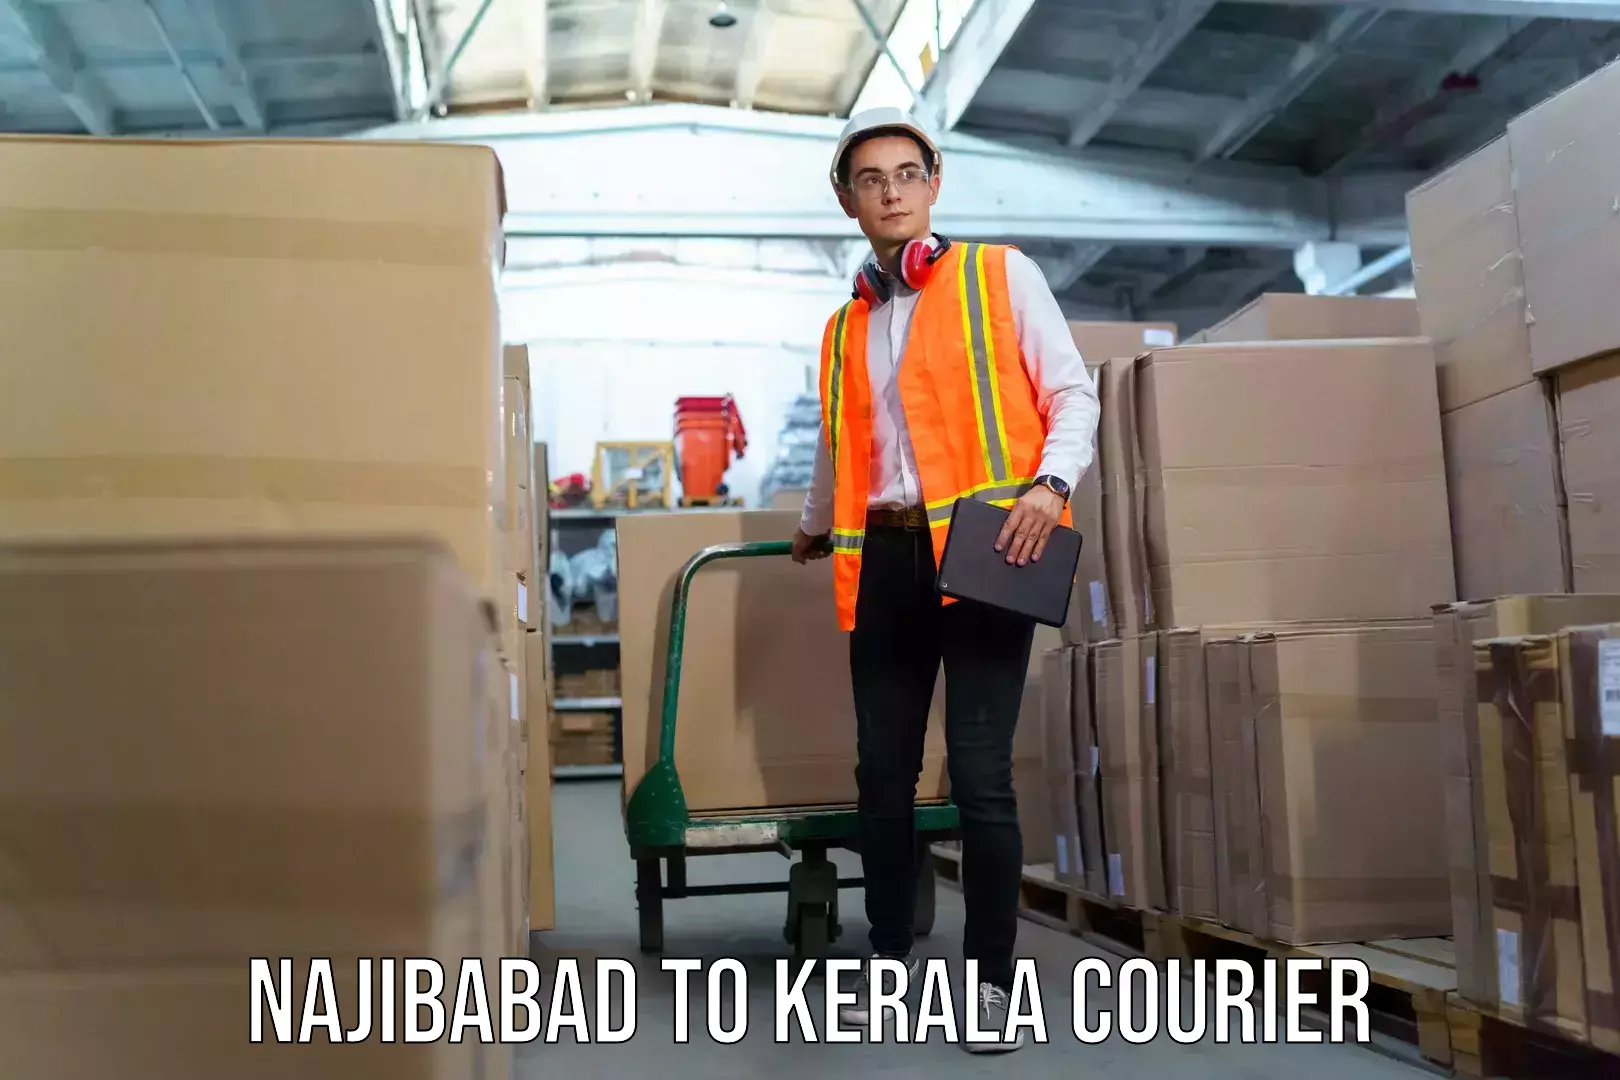 Baggage shipping logistics Najibabad to Kerala